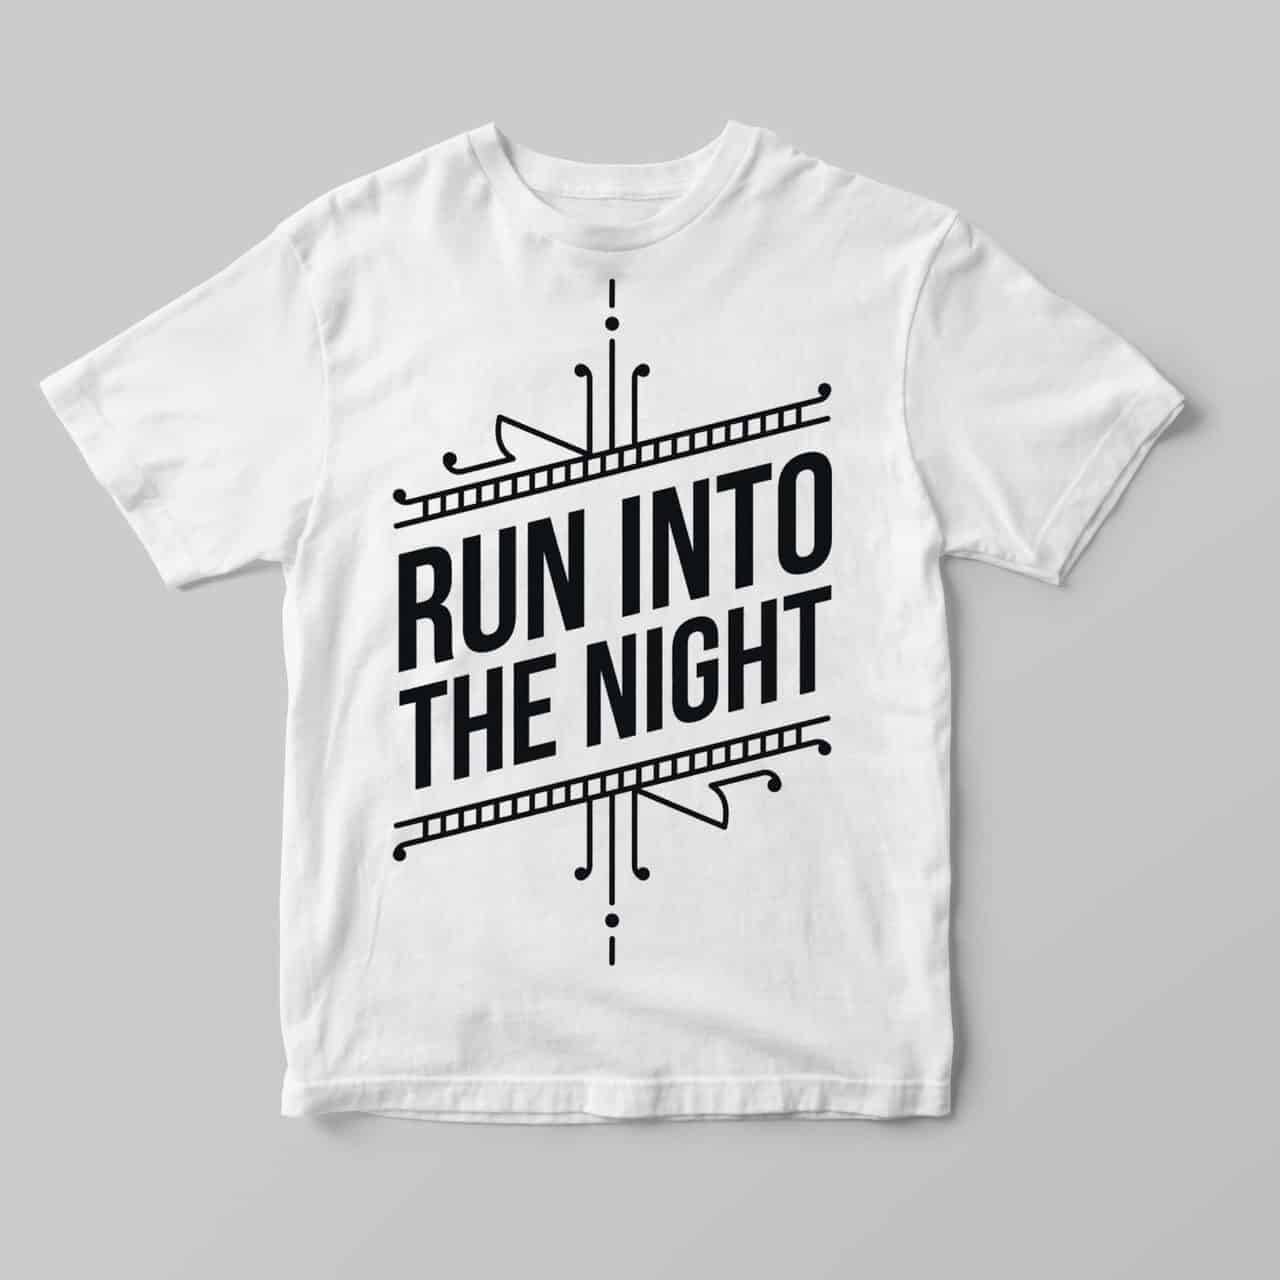 Run Into The Night - White T-Shirt